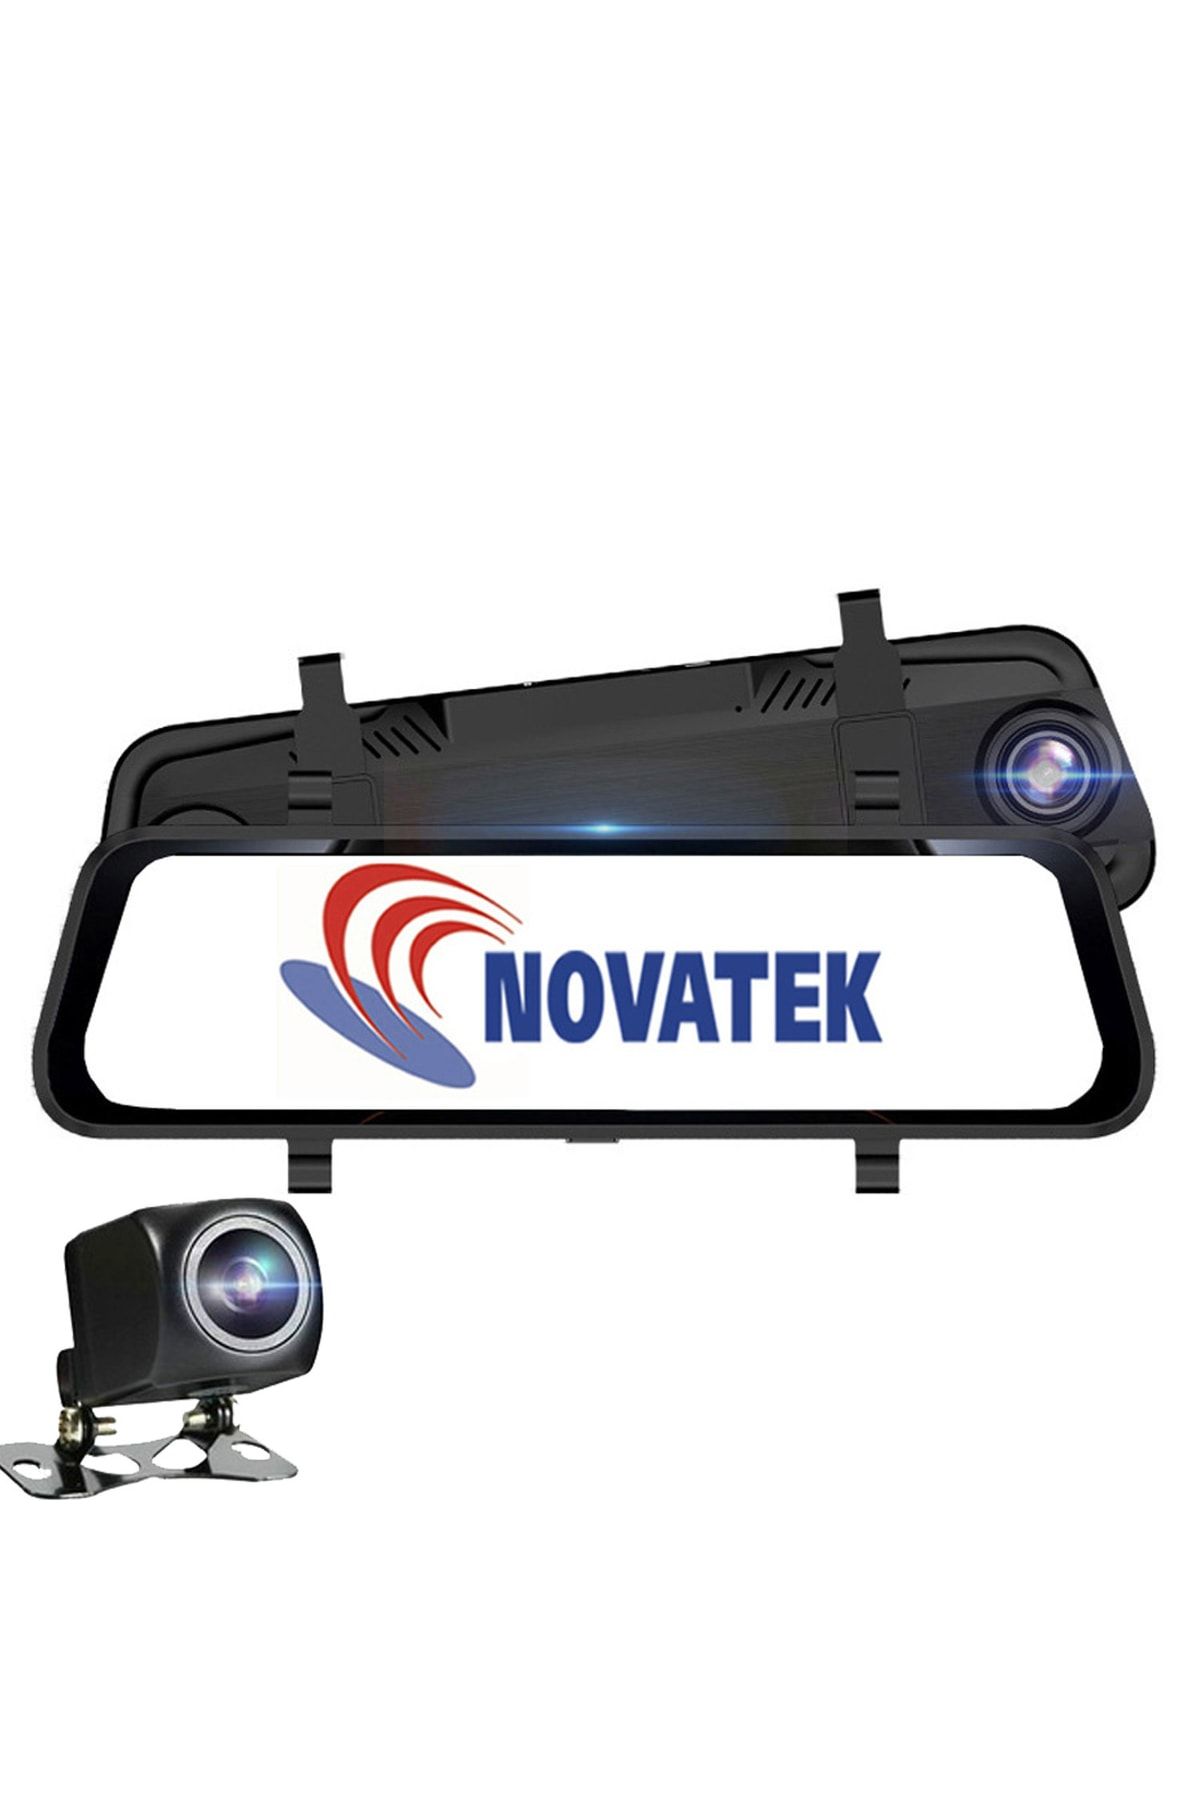 Novatek Nt921gw 2k Quad Hd 1440p+1080p 10 Inç Ips Dokunmatik Gps Wifi Modüllü Çift Yön Araç Kamerası